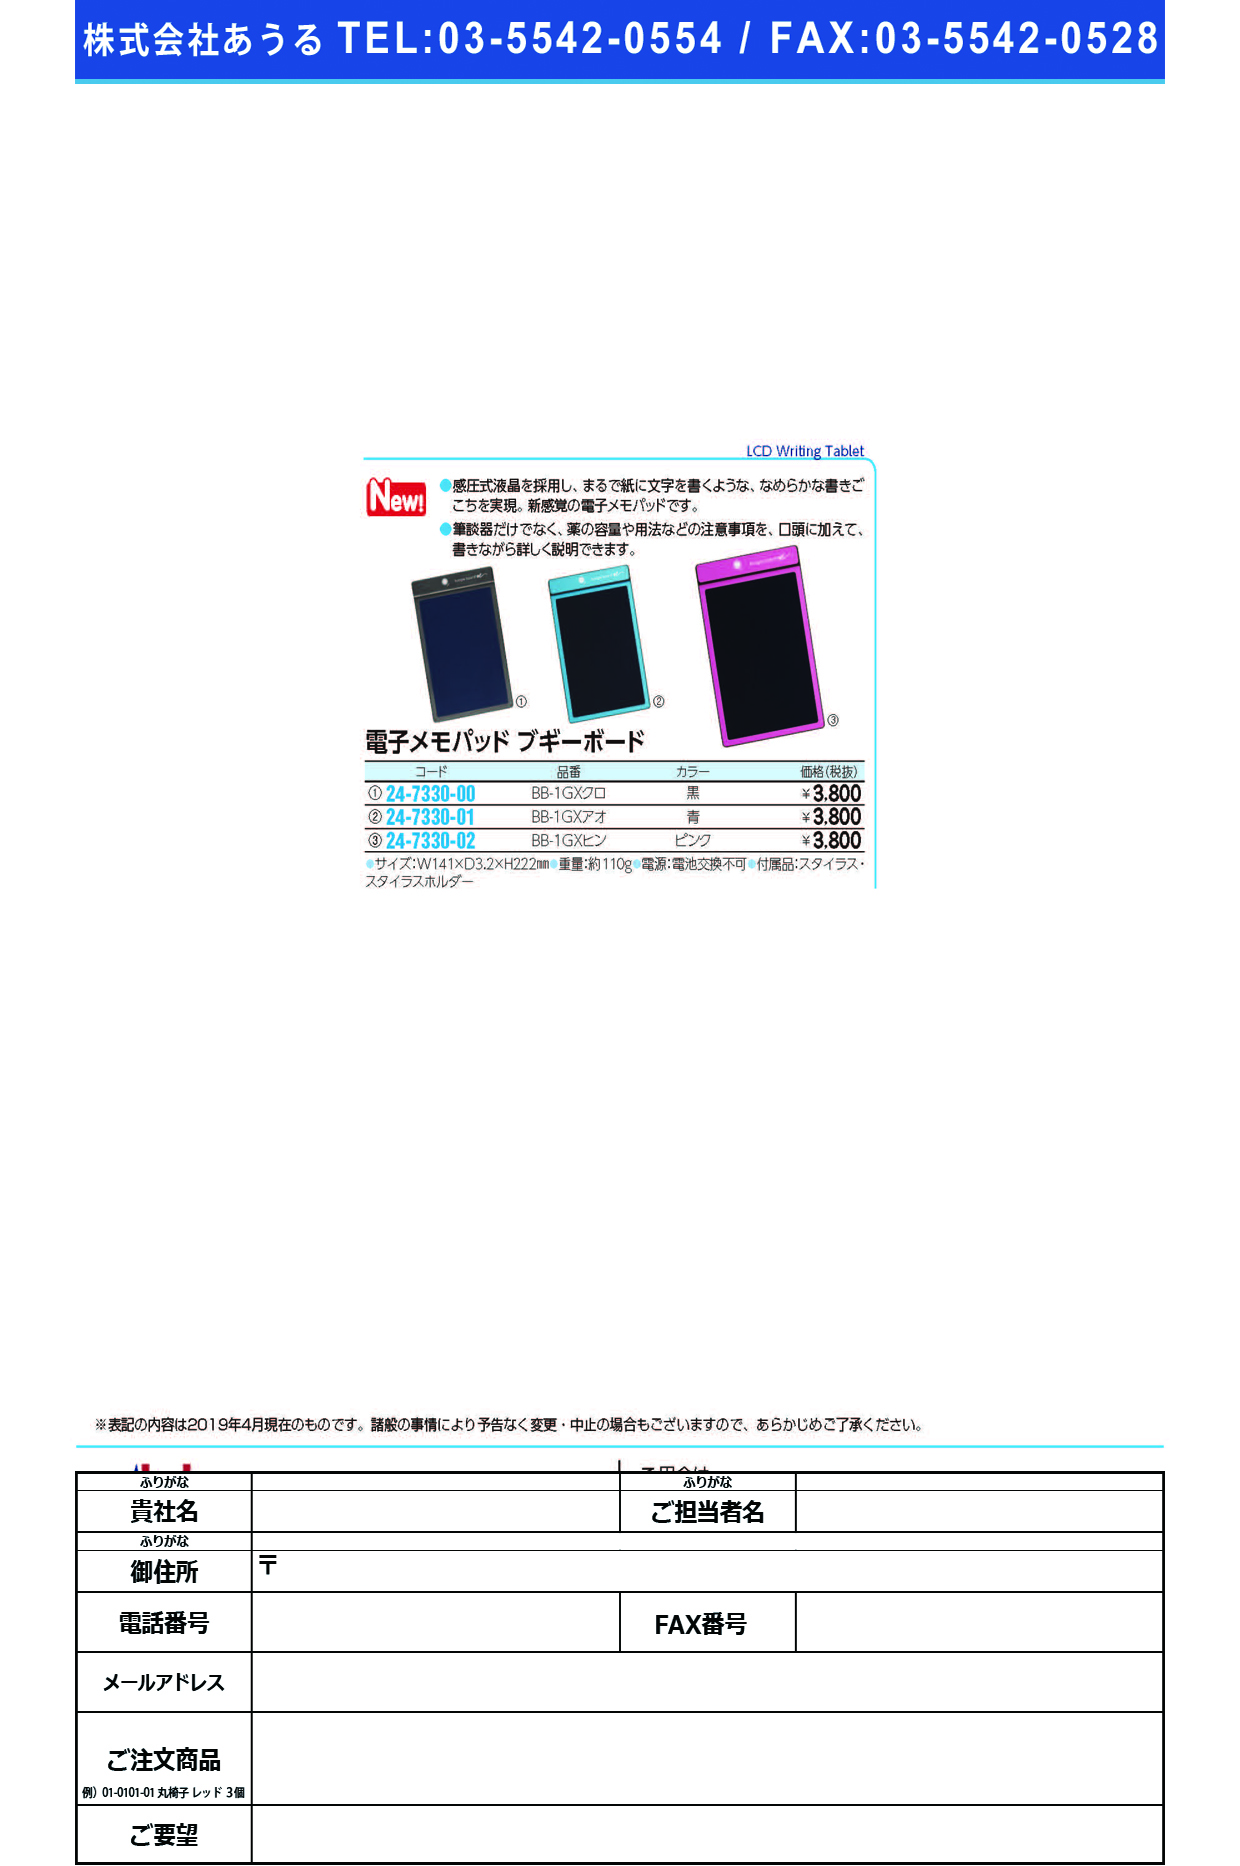 (24-7330-00)電子メモパッド　ブギーボードBB-1GXｸﾛ ﾃﾞﾝｼﾒﾓﾊﾟｯﾄﾞﾌﾞｷﾞﾎﾞｰﾄﾞ(キングジム)【1個単位】【2019年カタログ商品】